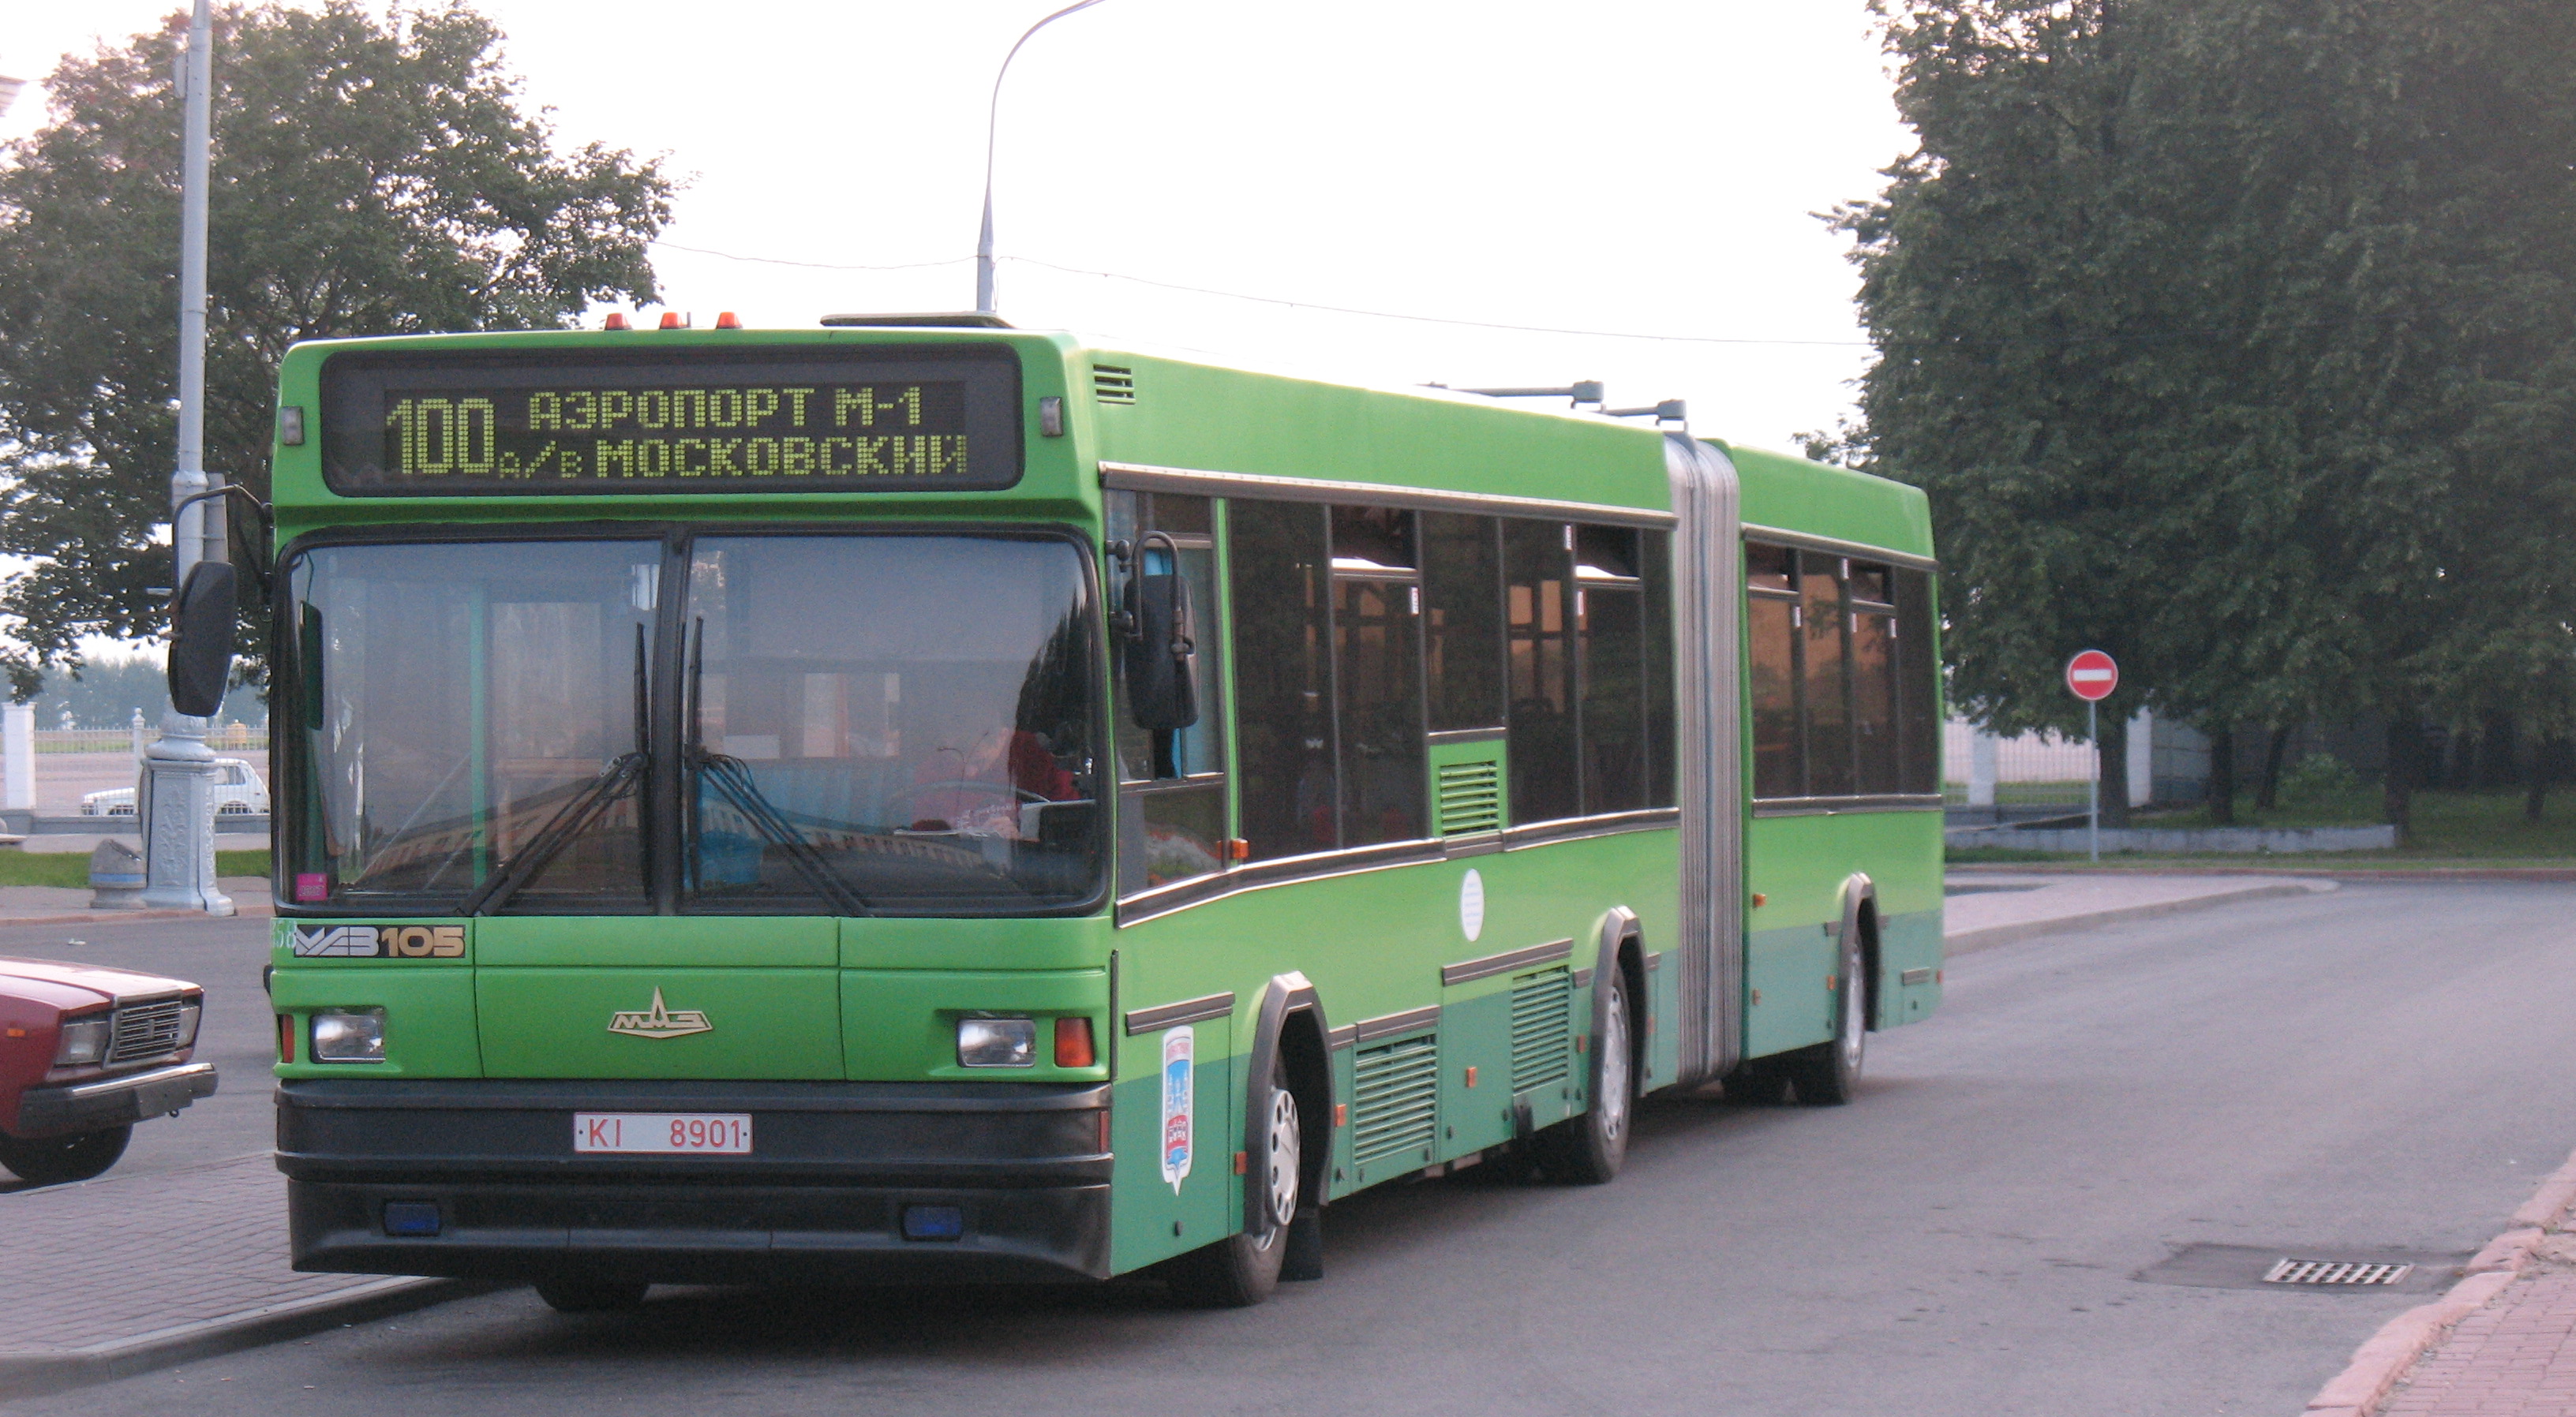 Автобус МАЗ-105 KI 8901 магистрального маршрута 100 на развороте у старого аэропорта